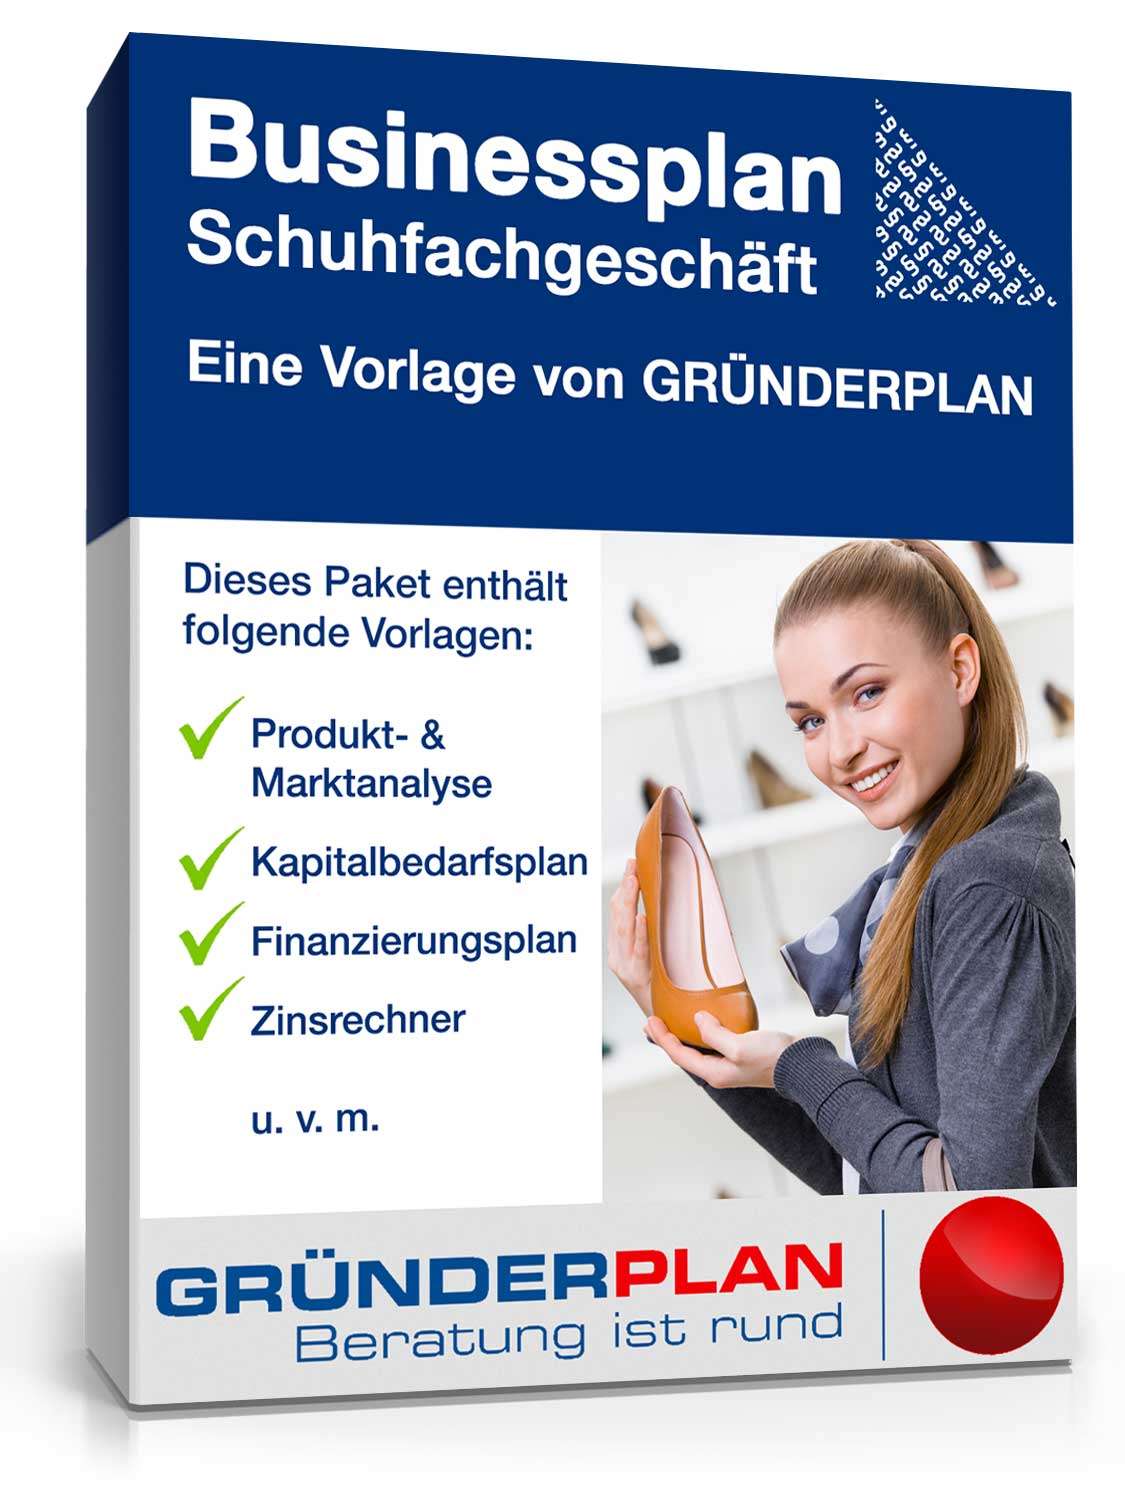 Hauptbild des Produkts: Businessplan Schuhfachgeschäft von Gründerplan